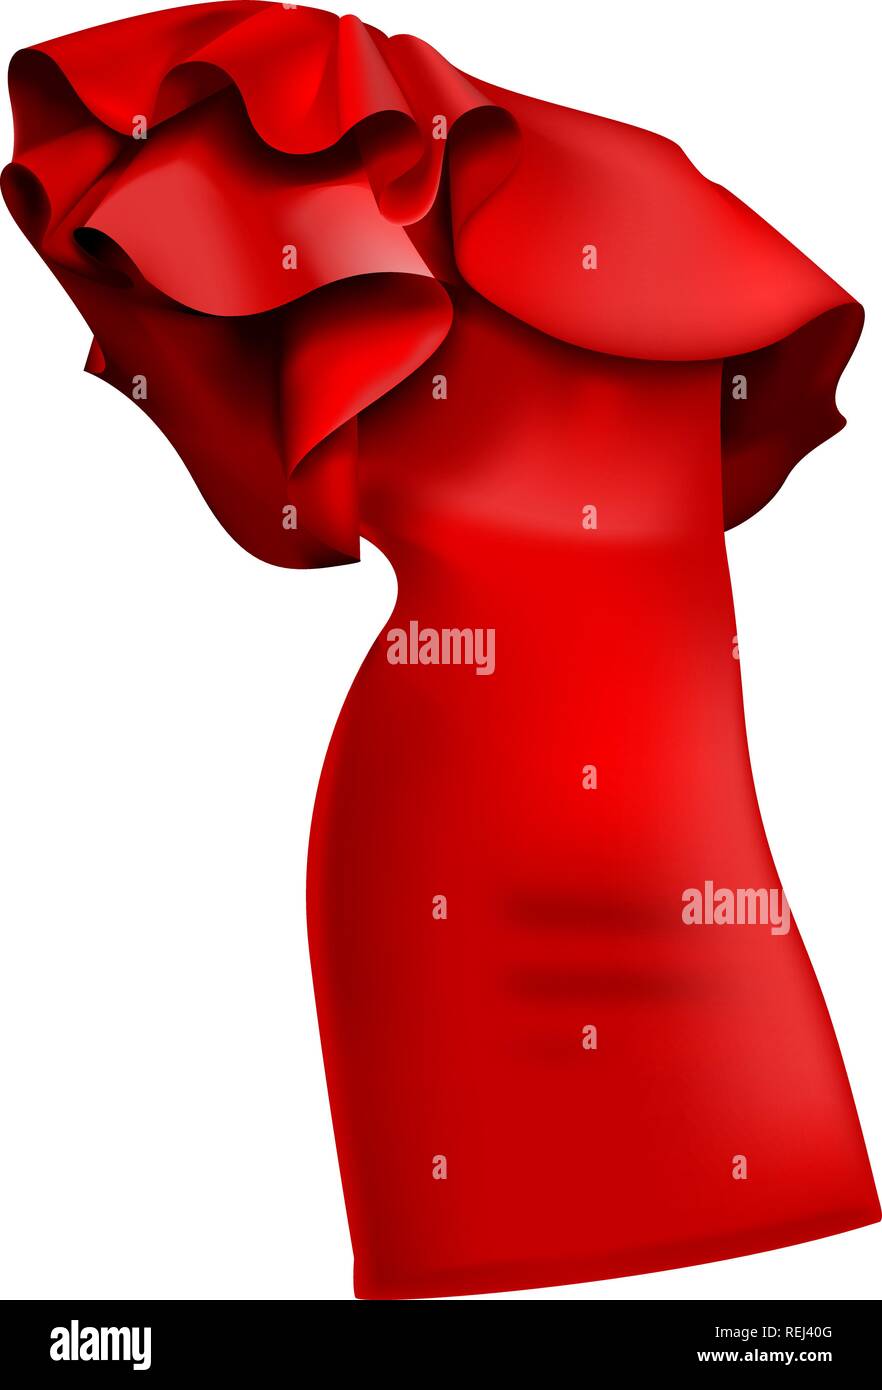 Un bellissimo ed elegante abito rosso con volant/fronzoli. Abiti alla moda - arruffare e paracolpi, bellissimi modelli di abiti per le donne della moda. Vettore i Illustrazione Vettoriale